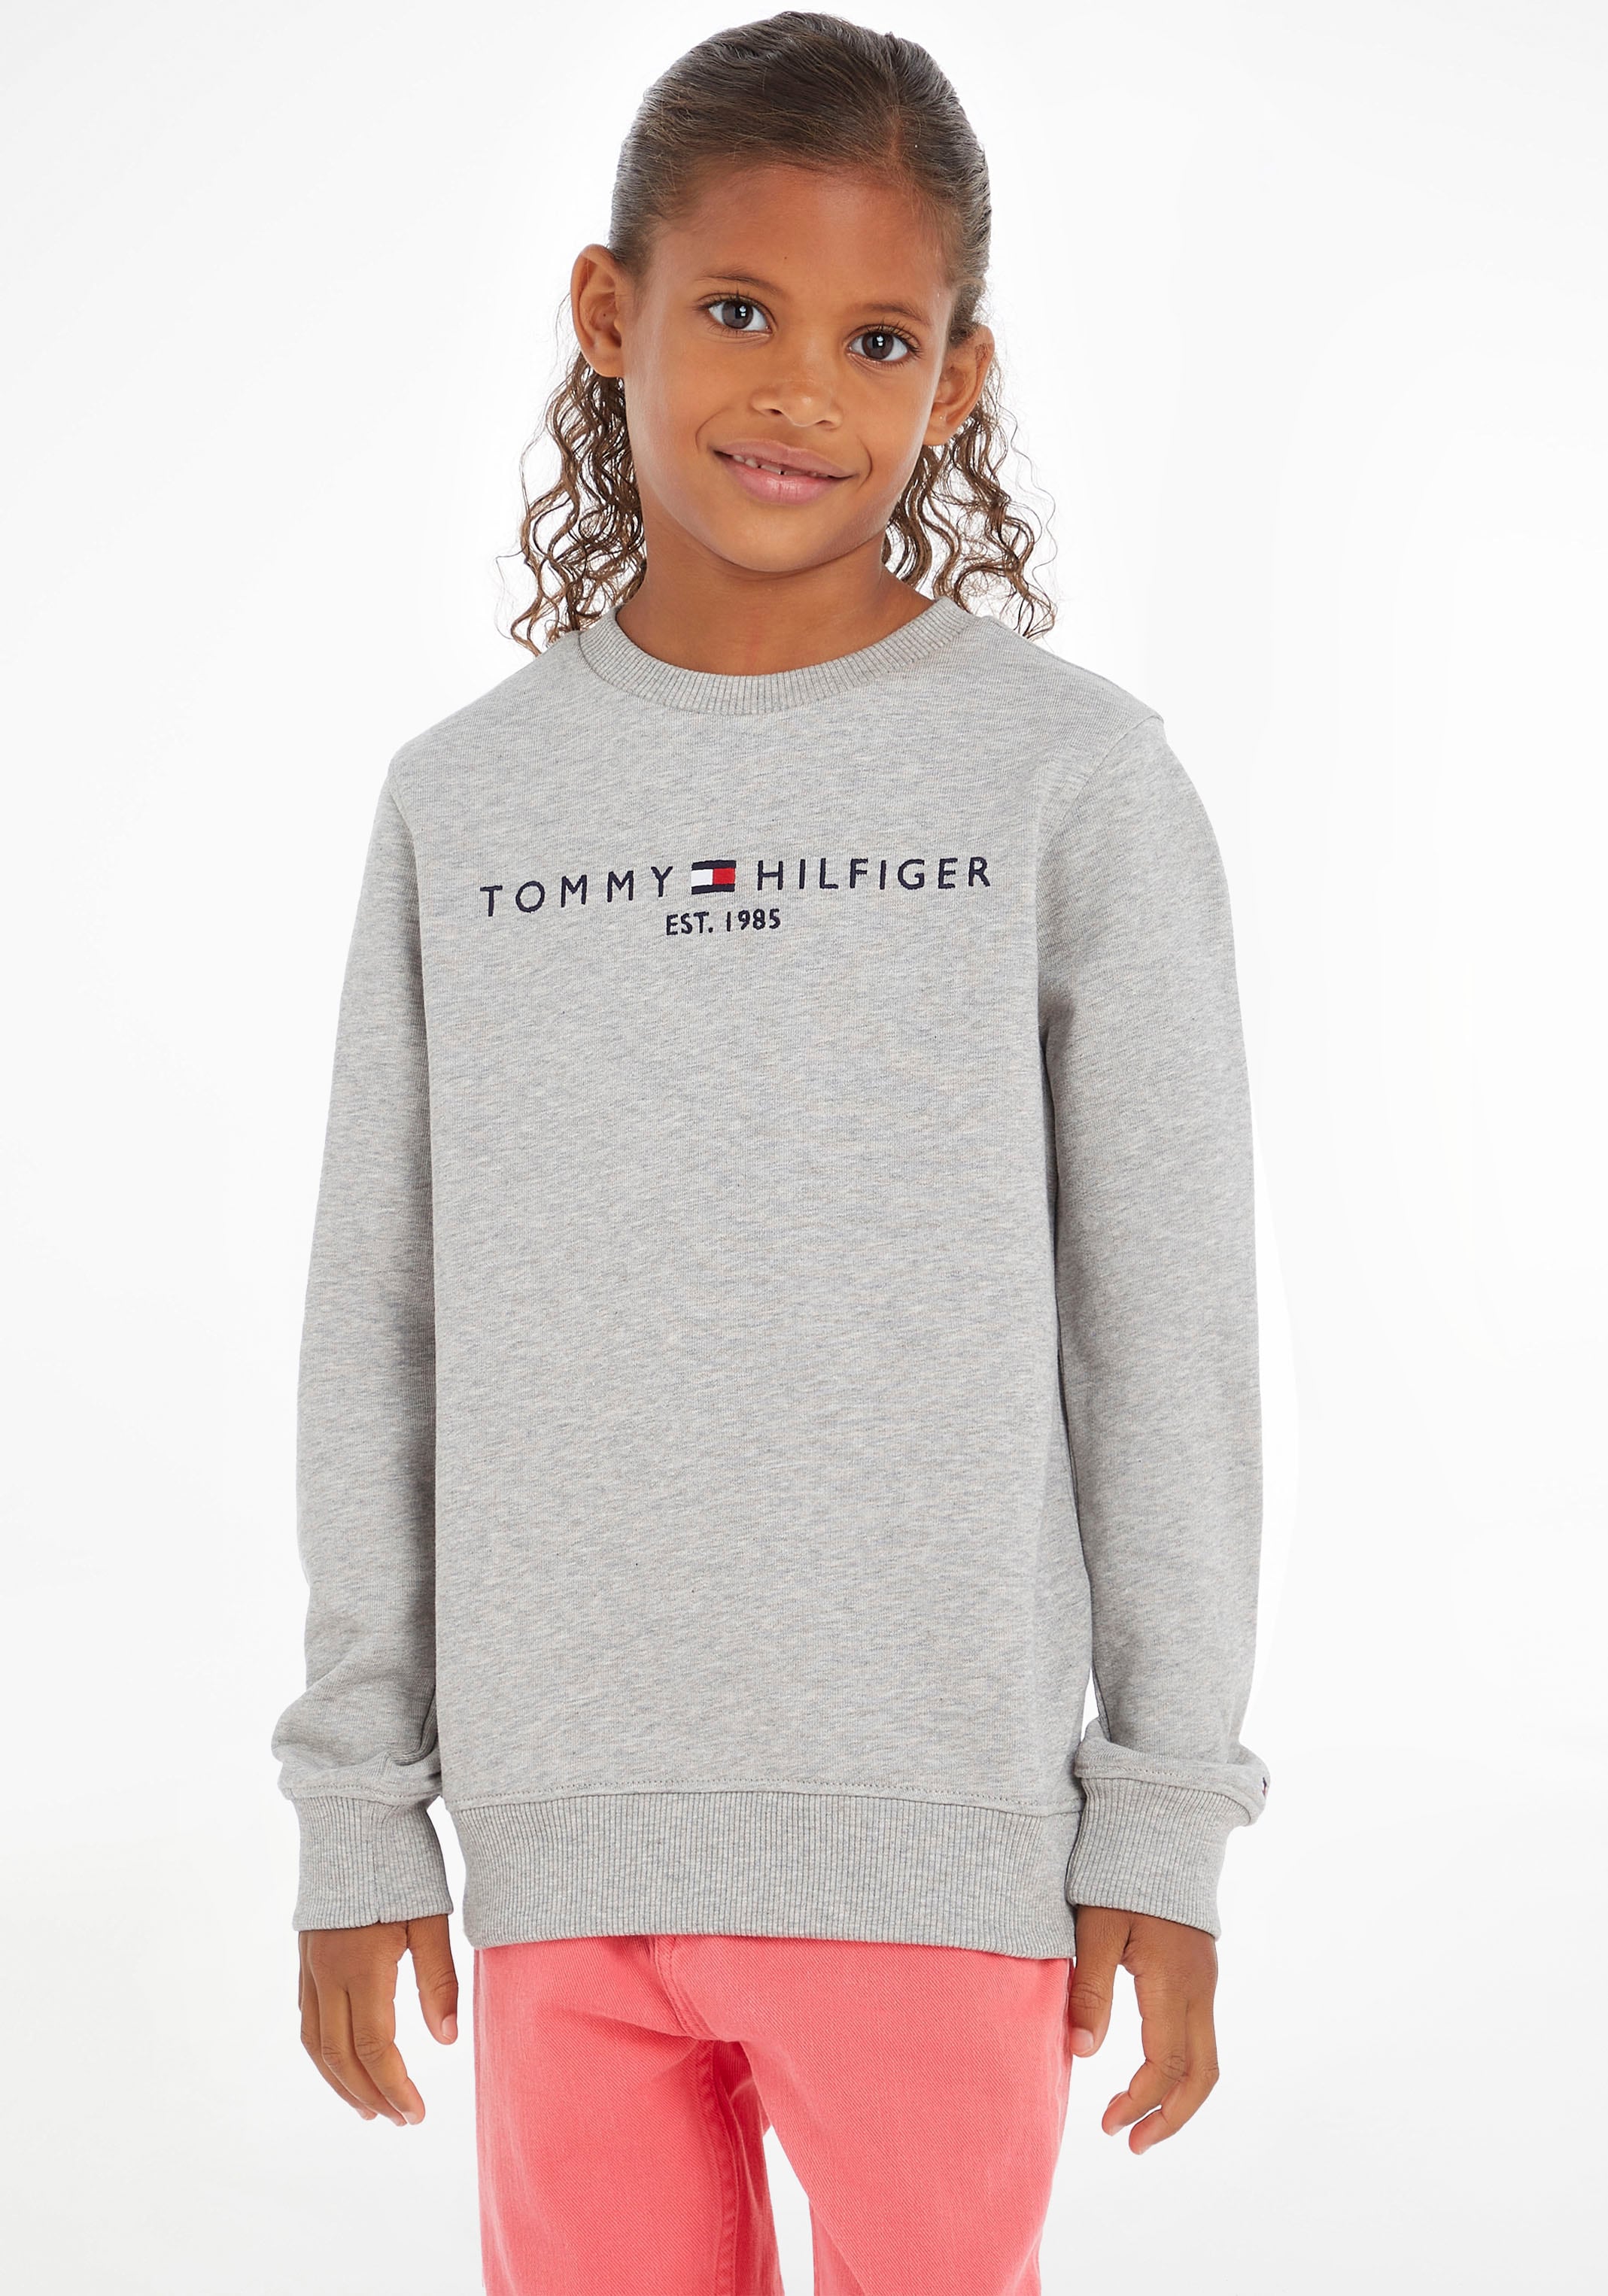 »ESSENTIAL bei Hilfiger Sweatshirt Junior Mädchen Jungen Kids Tommy SWEATSHIRT«, und MiniMe,für Kinder OTTO